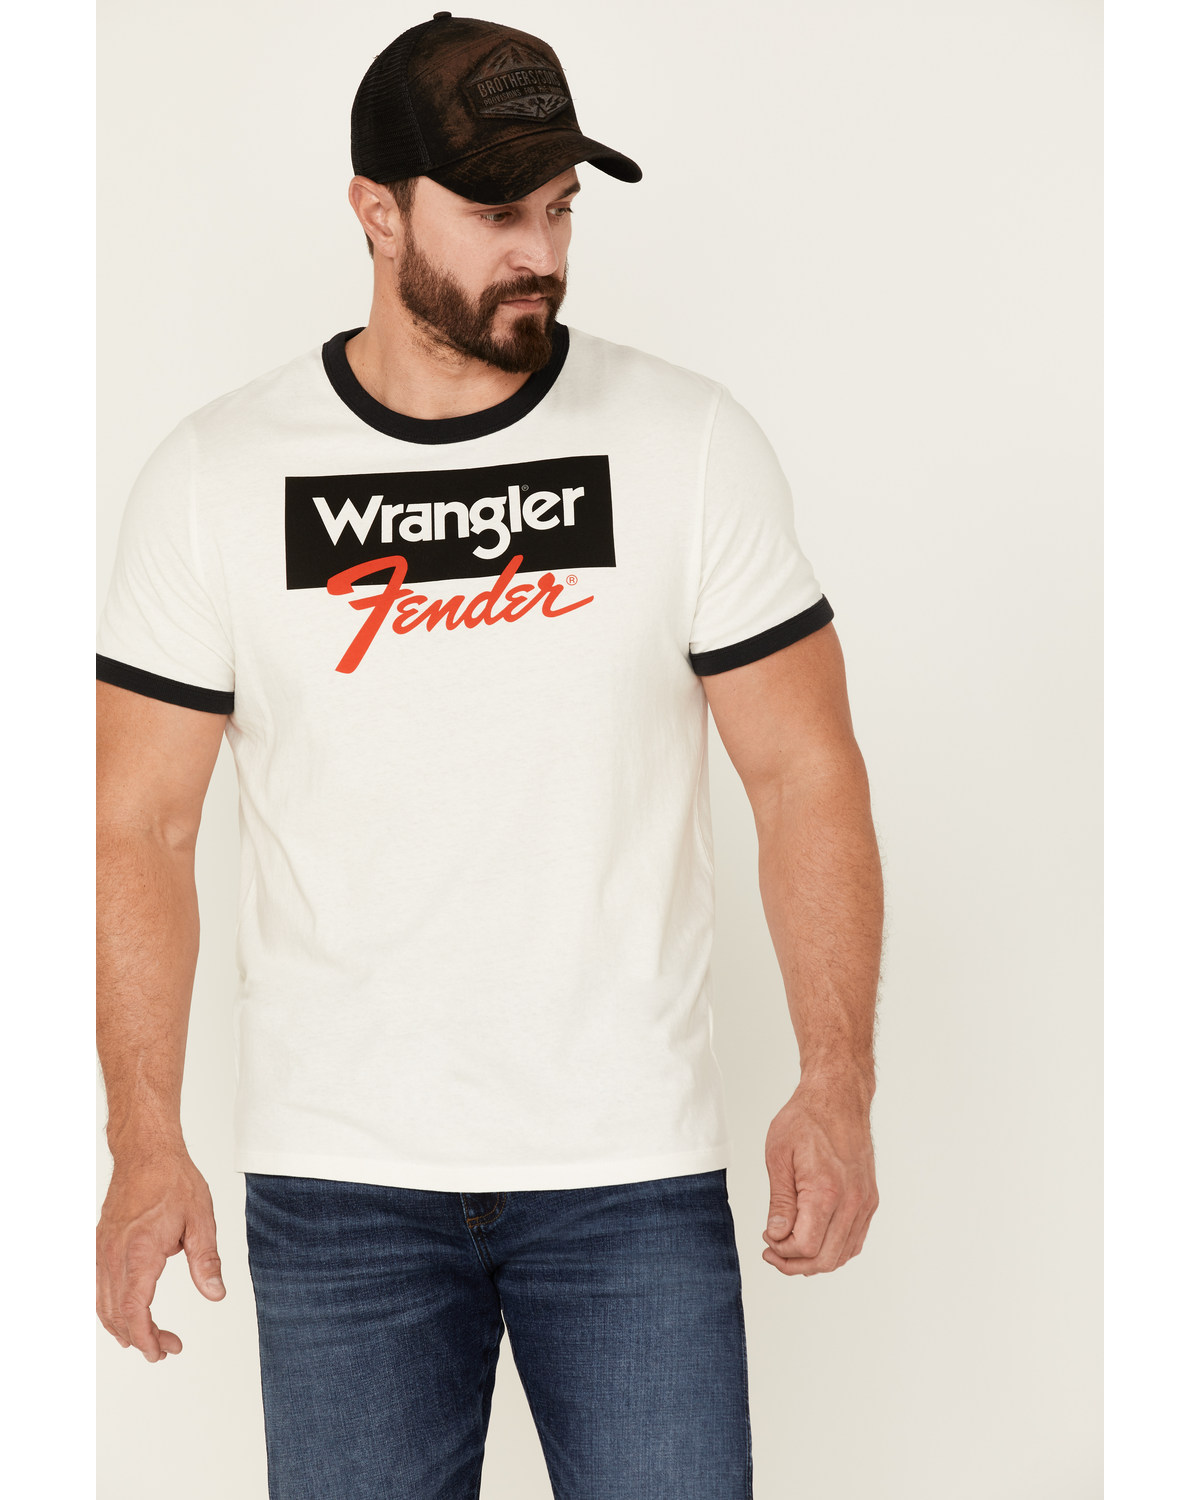 Wrangler X Fender Men's Logo Graphic Ringer T-Shirt